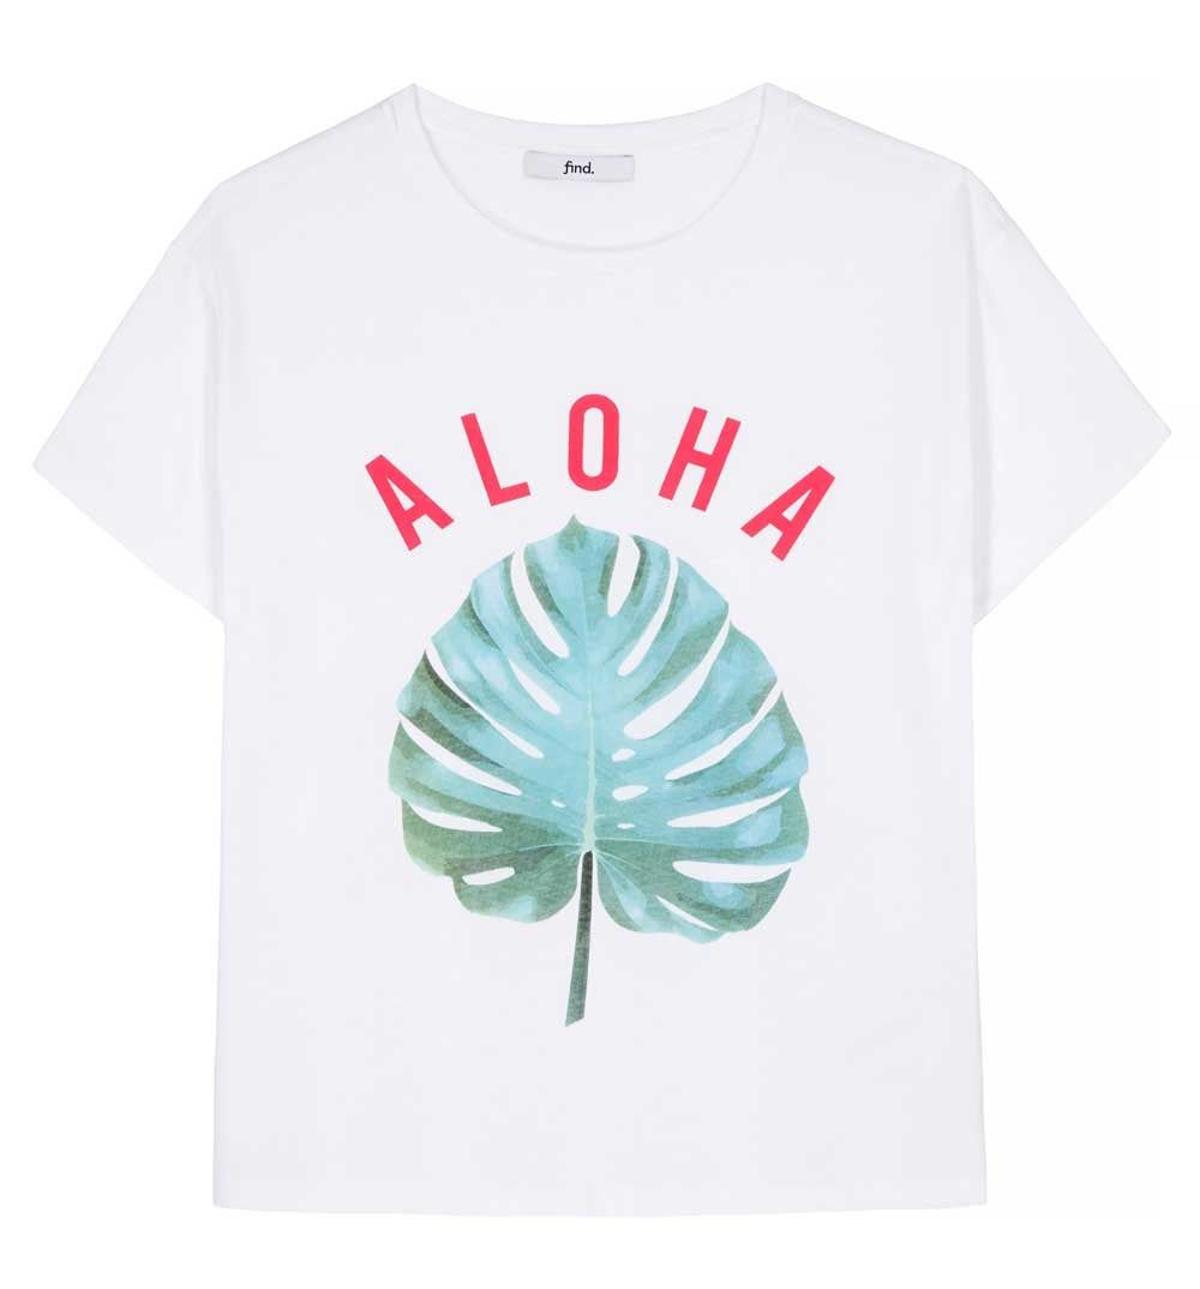 Camiseta Aloha de Find.